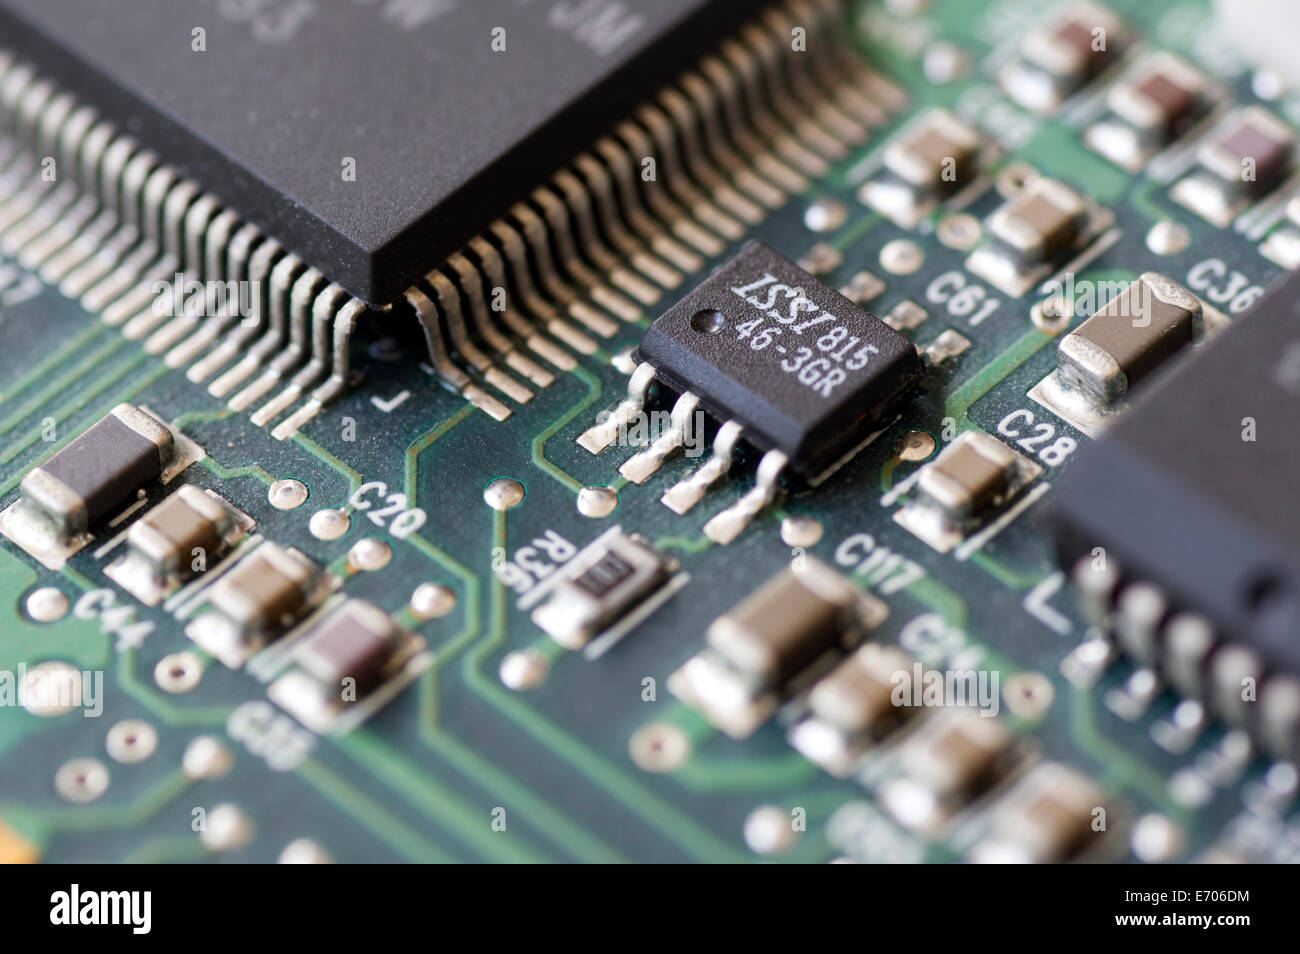 Nahaufnahme von einer Leiterplatte mit Komponenten wie integrierte  Schaltkreise Stockfotografie - Alamy